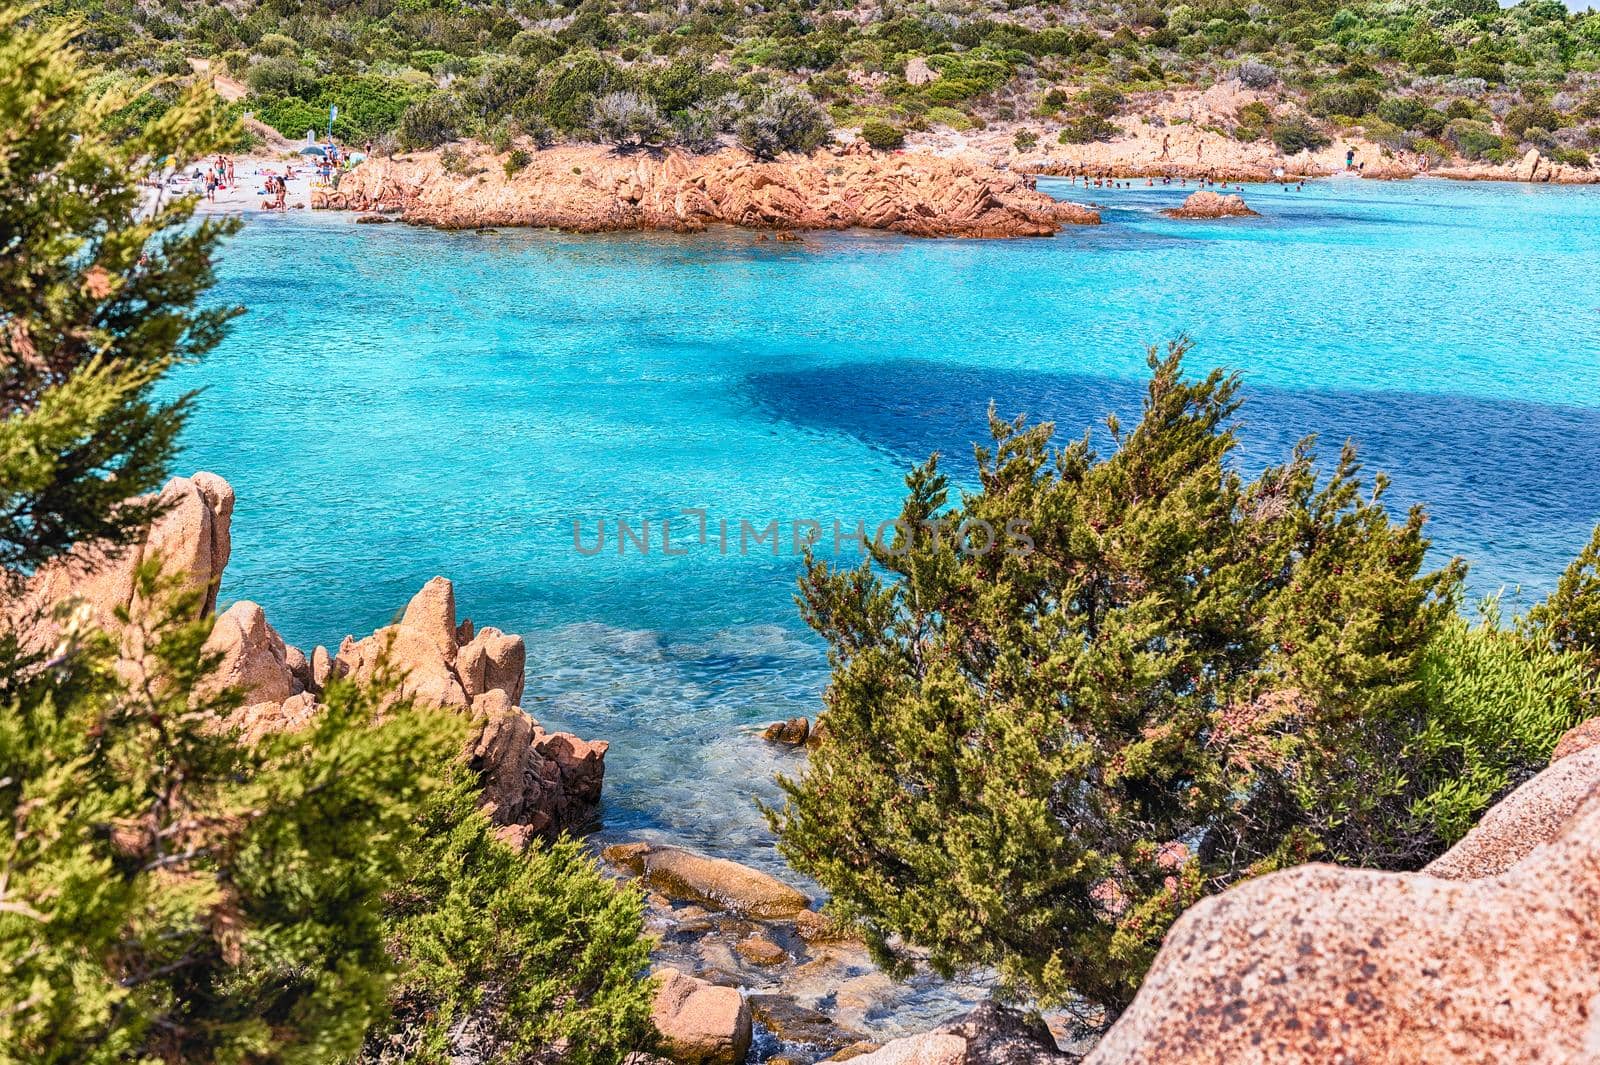 View over the scenic Spiaggia del Principe, Sardinia, Italy by marcorubino